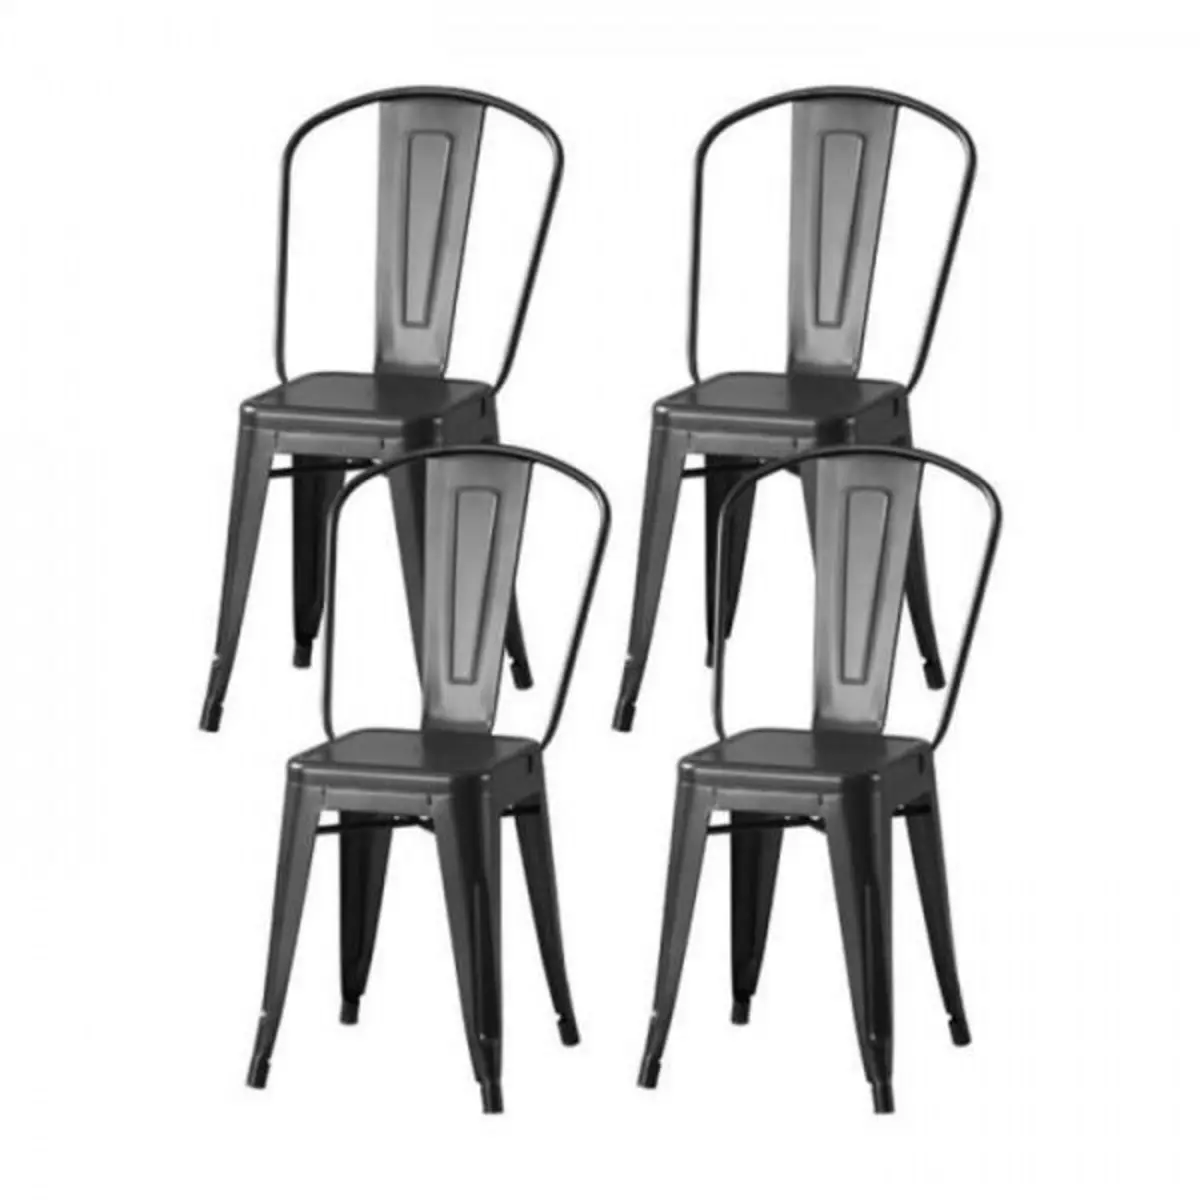 MARKET24 Lot de 4 chaises en métal noir - L 44 x P 45 x H 85 cm - DARA